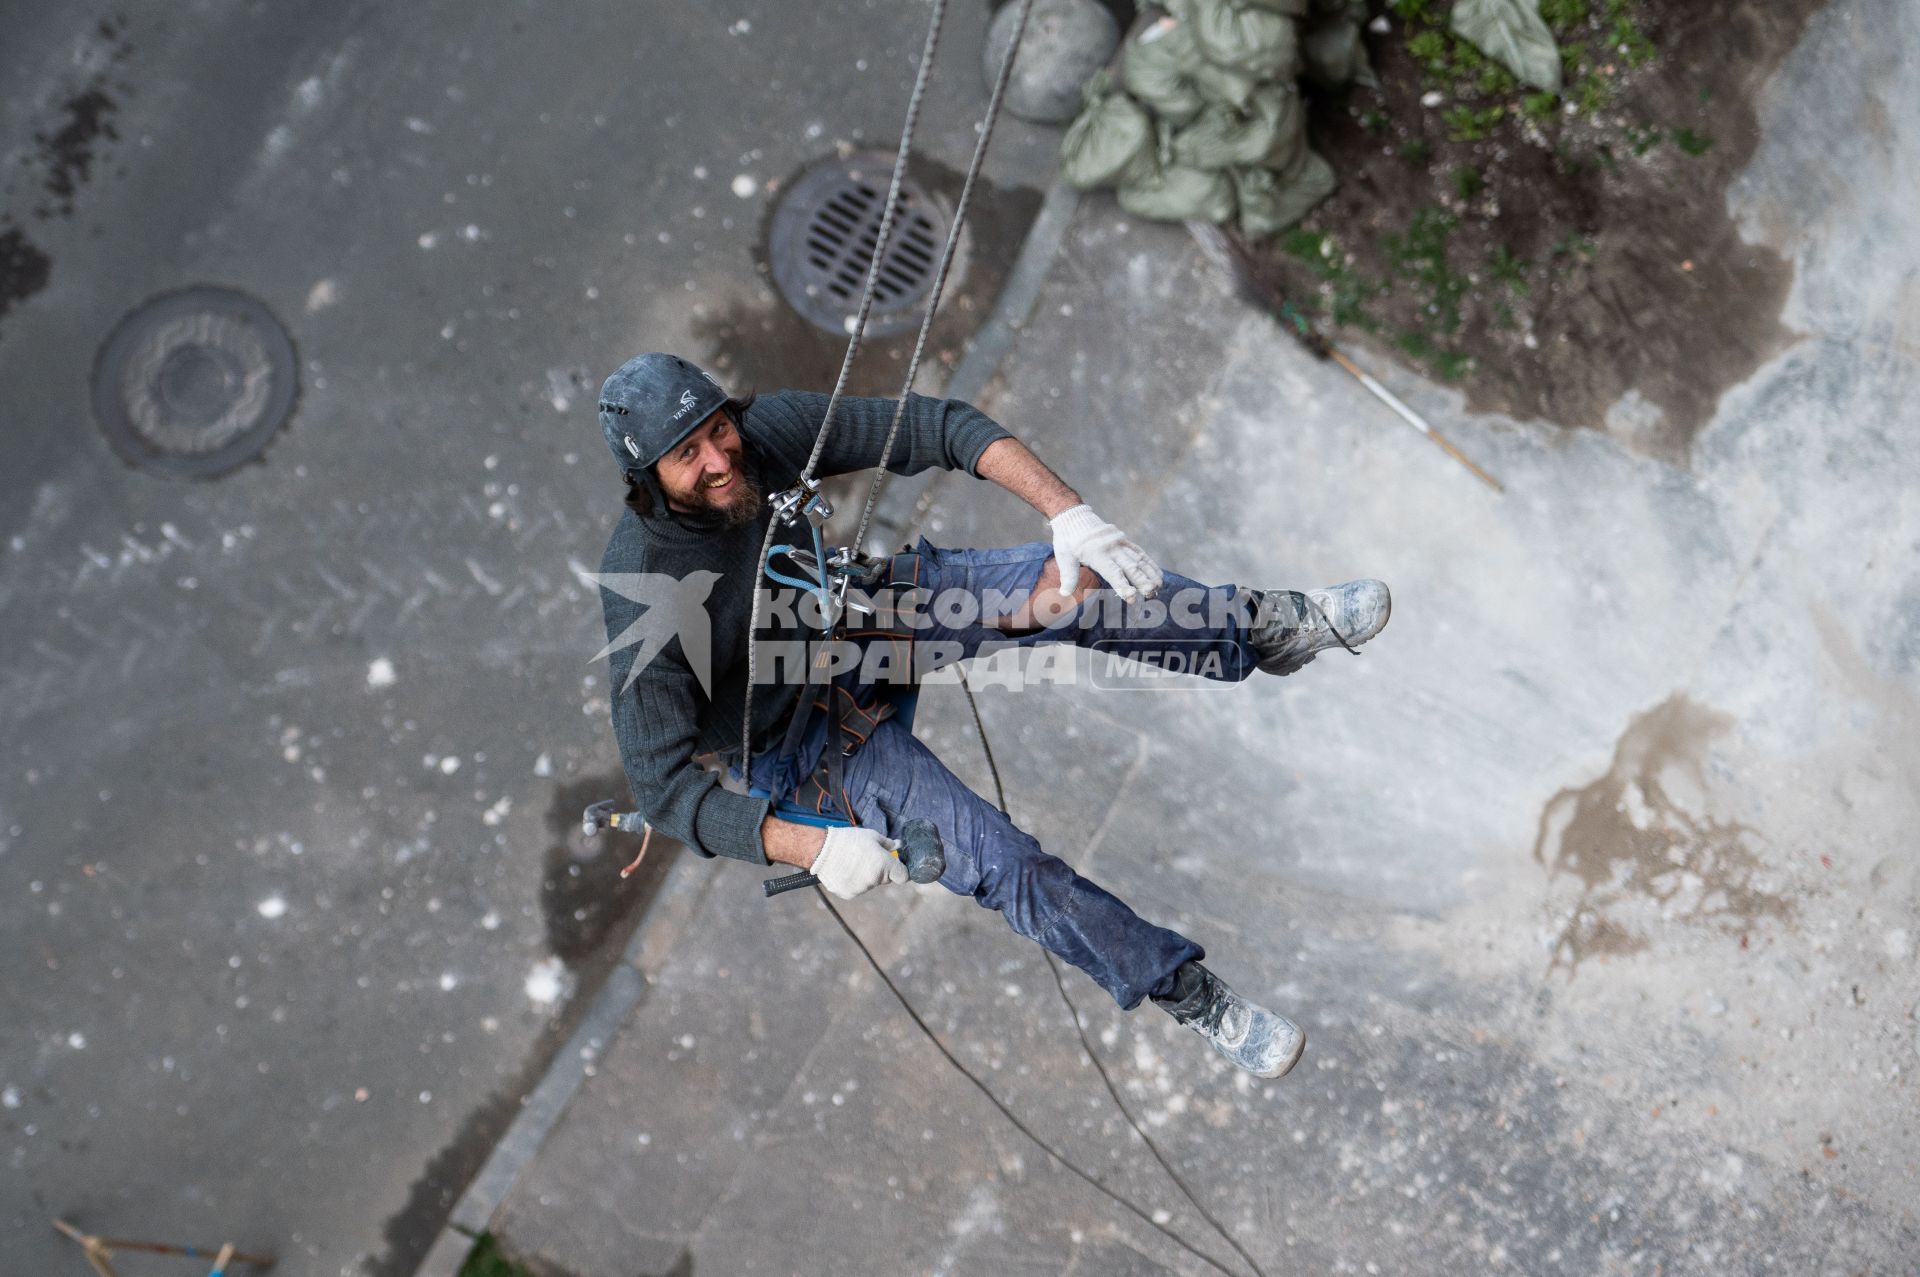 Санкт-Петербург. Промышленный альпинист во время ремонта фасада жилого дома.